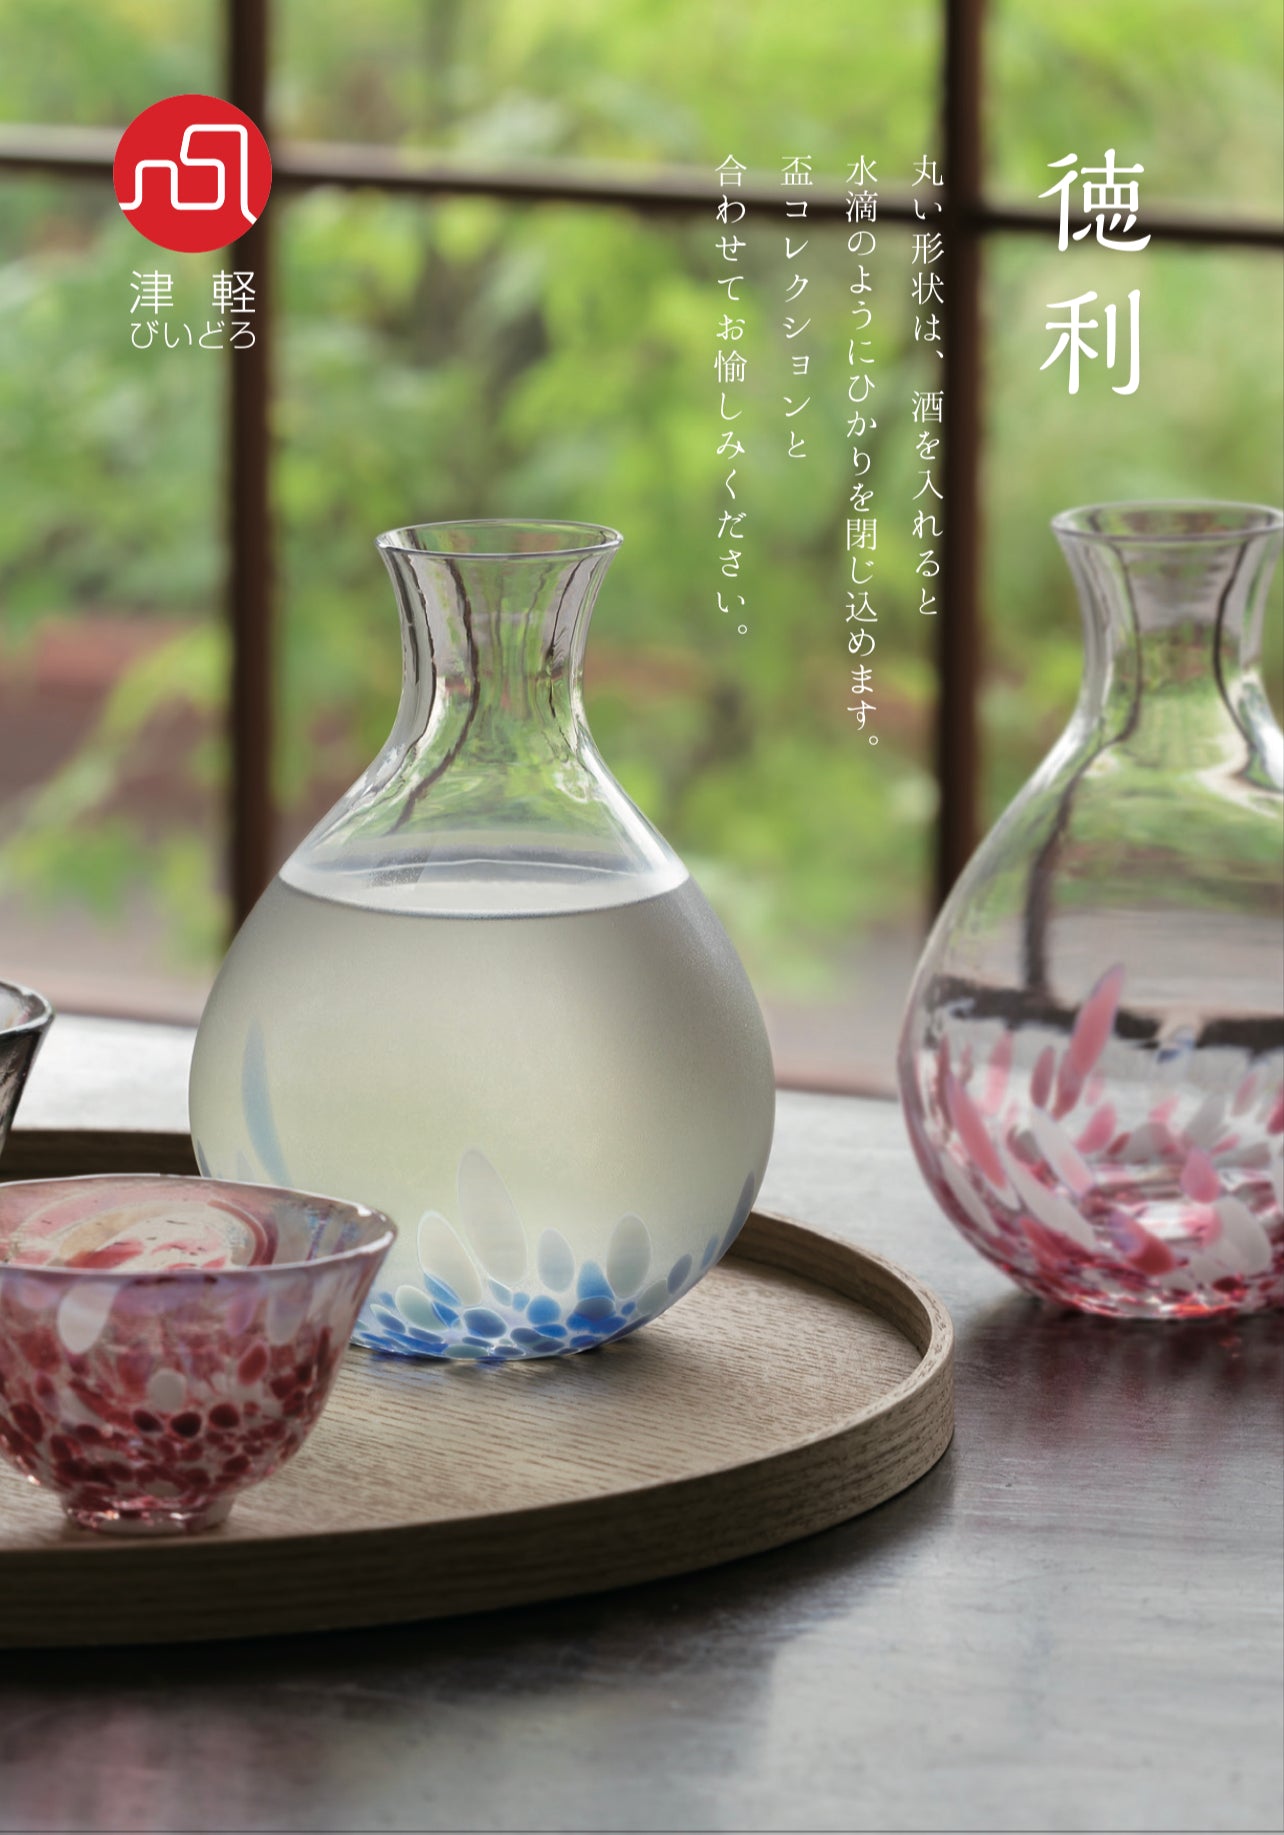 Vidro 津軽びいどろ - Sake Set / Sakura 桜吹雪